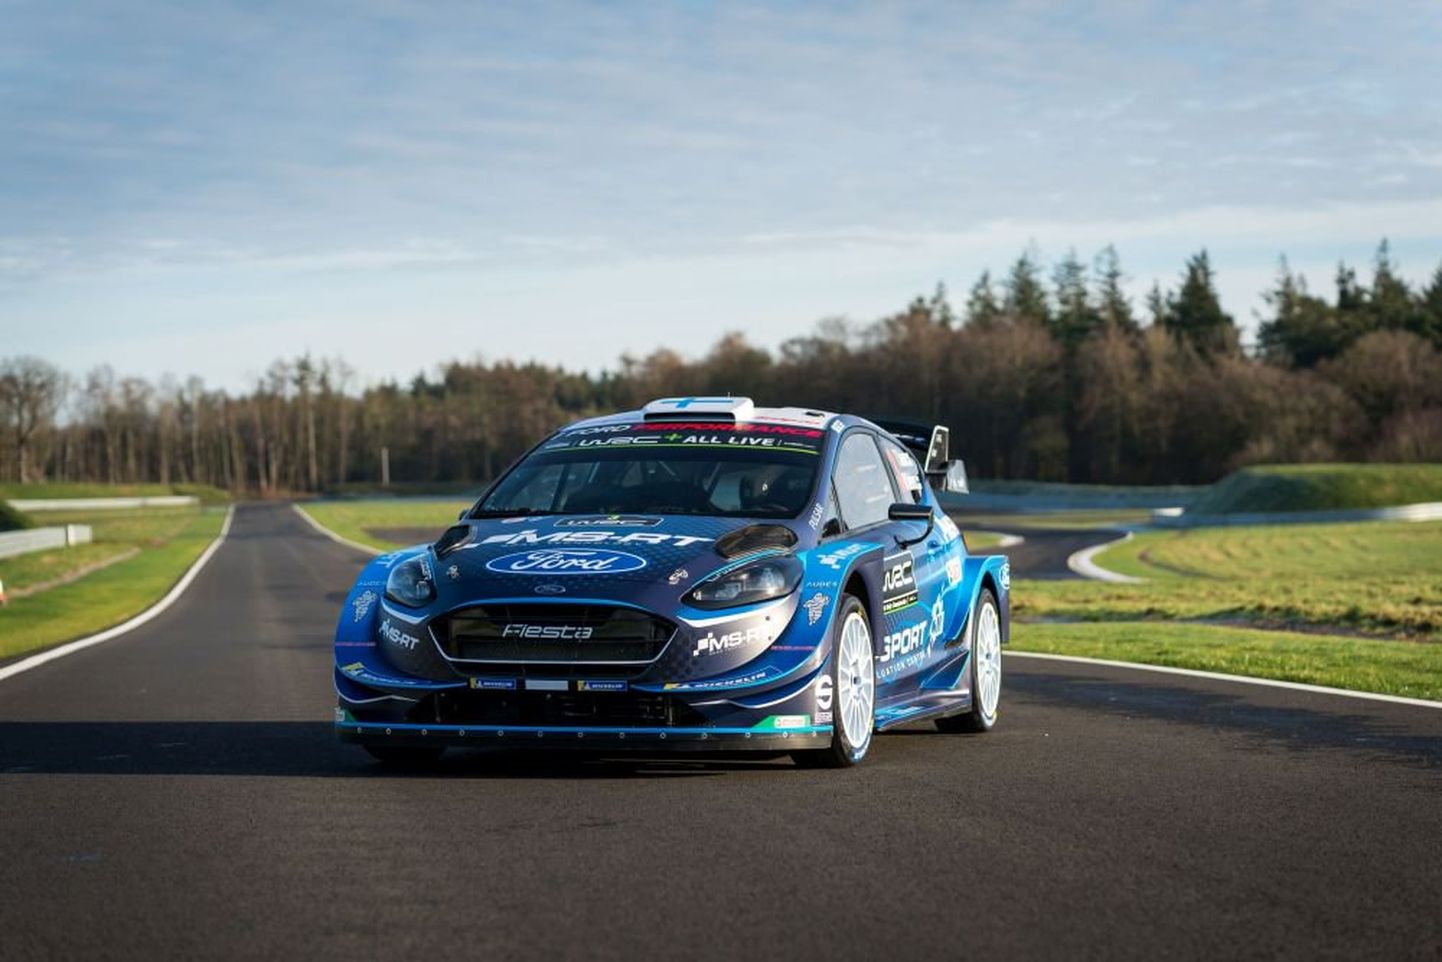 M-Spordi tänavused piloodid saavad võimaluse sõita MM-sarjas uue väljanägemisega Ford Fiesta WRC-masinaga.